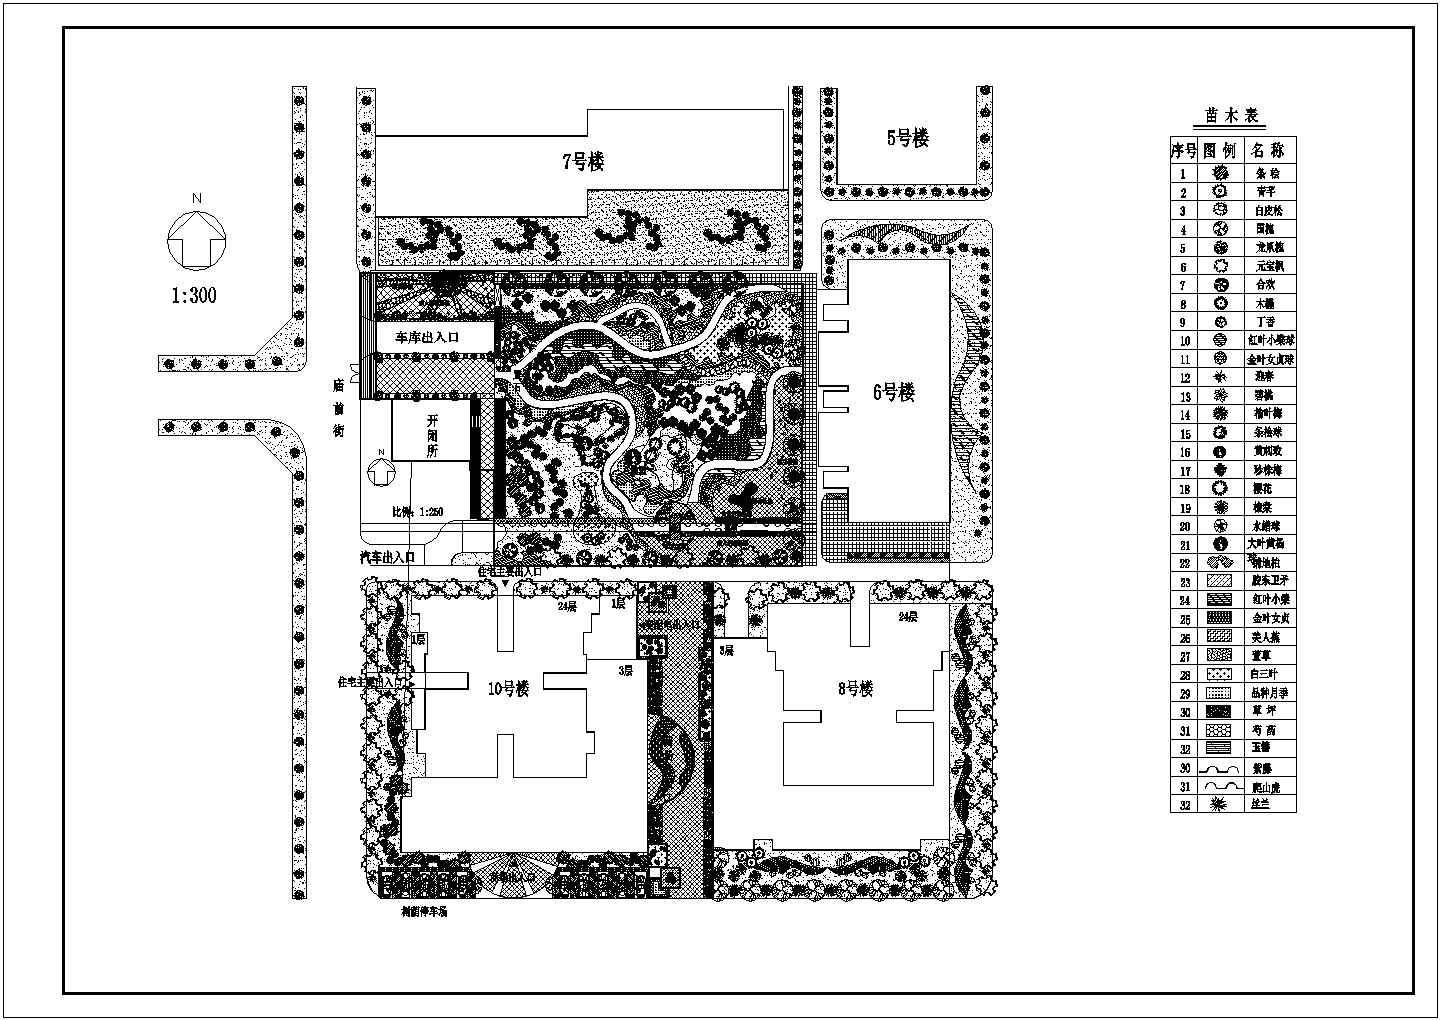 二十四层居住区屋顶绿化设计cad图(含总平面图)